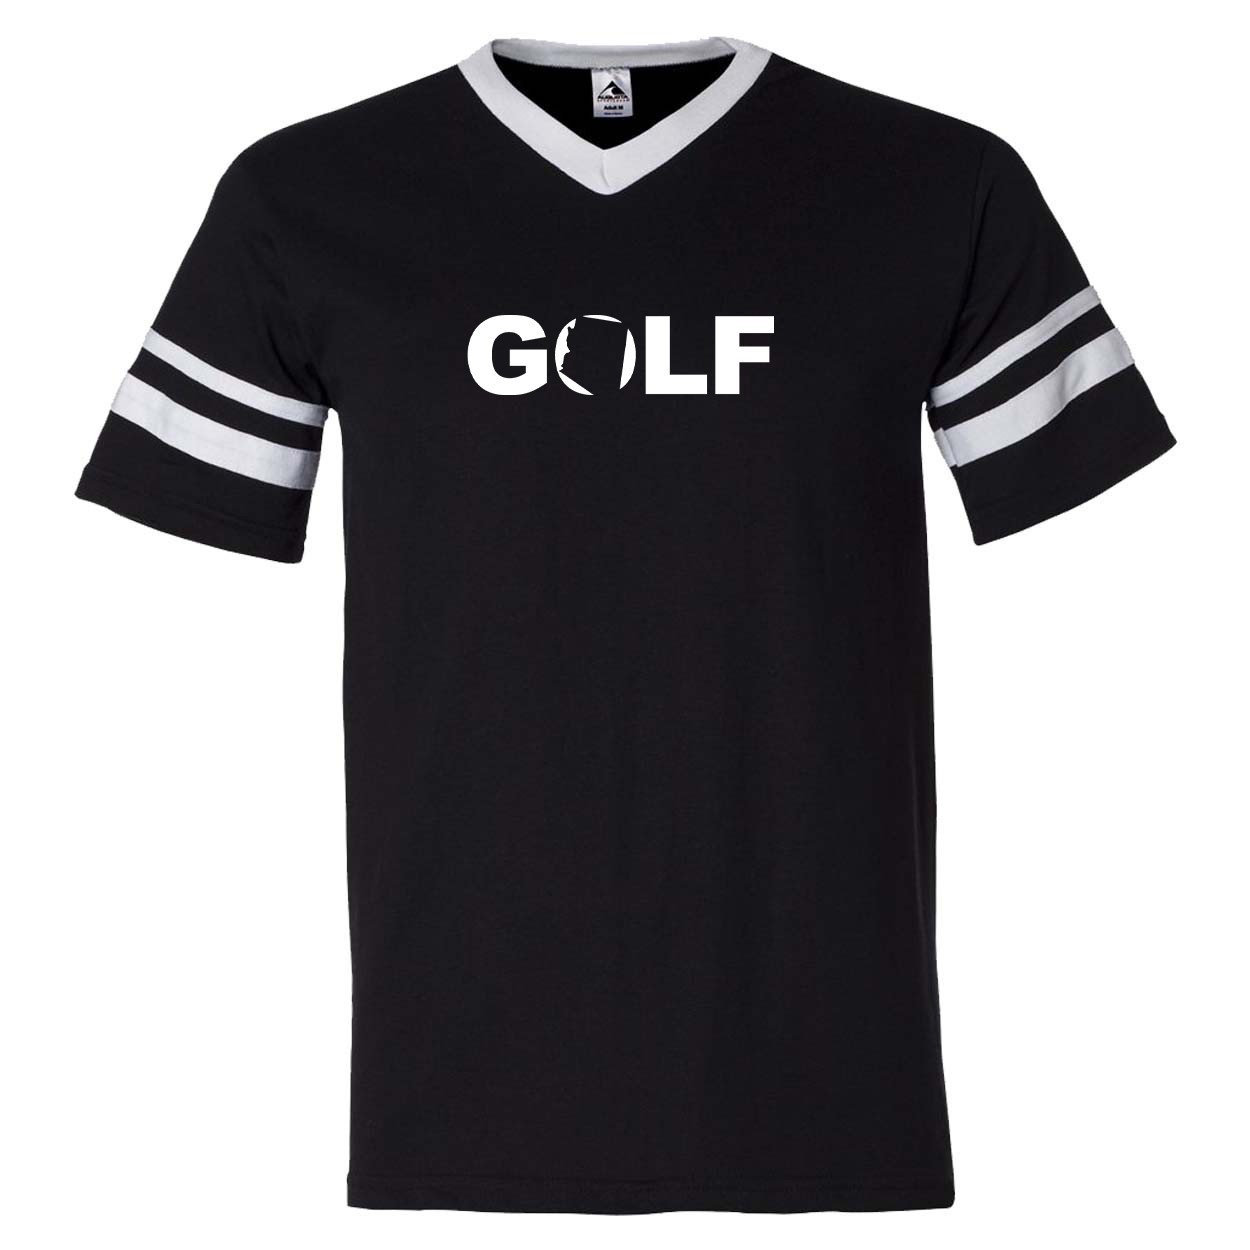 Golf Arizona Classic Premium Striped Jersey T-Shirt Black/White (White Logo)